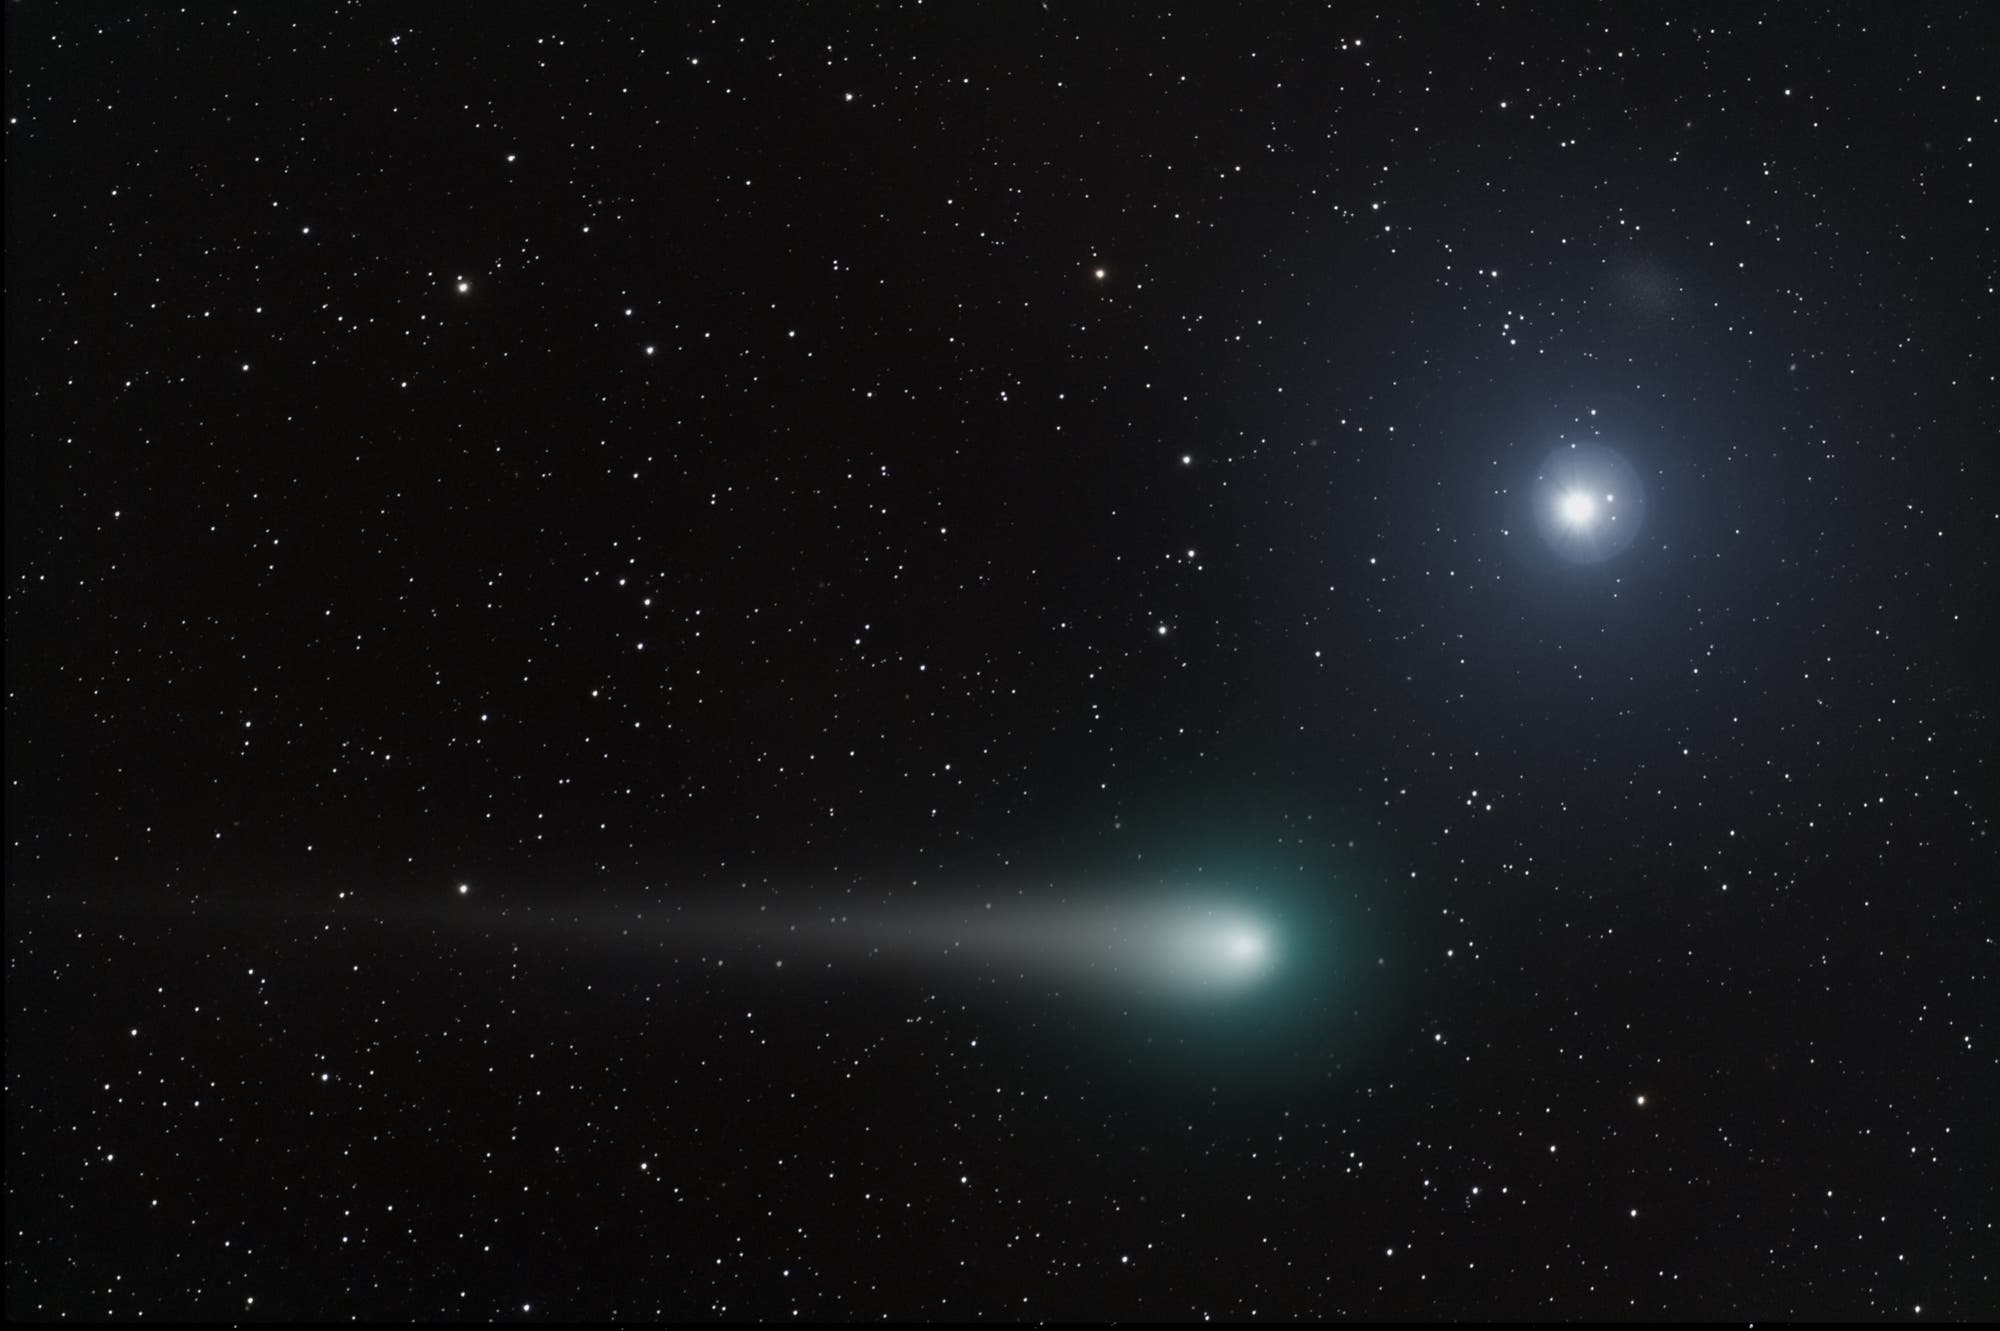 Komet Lulin bei Regulus